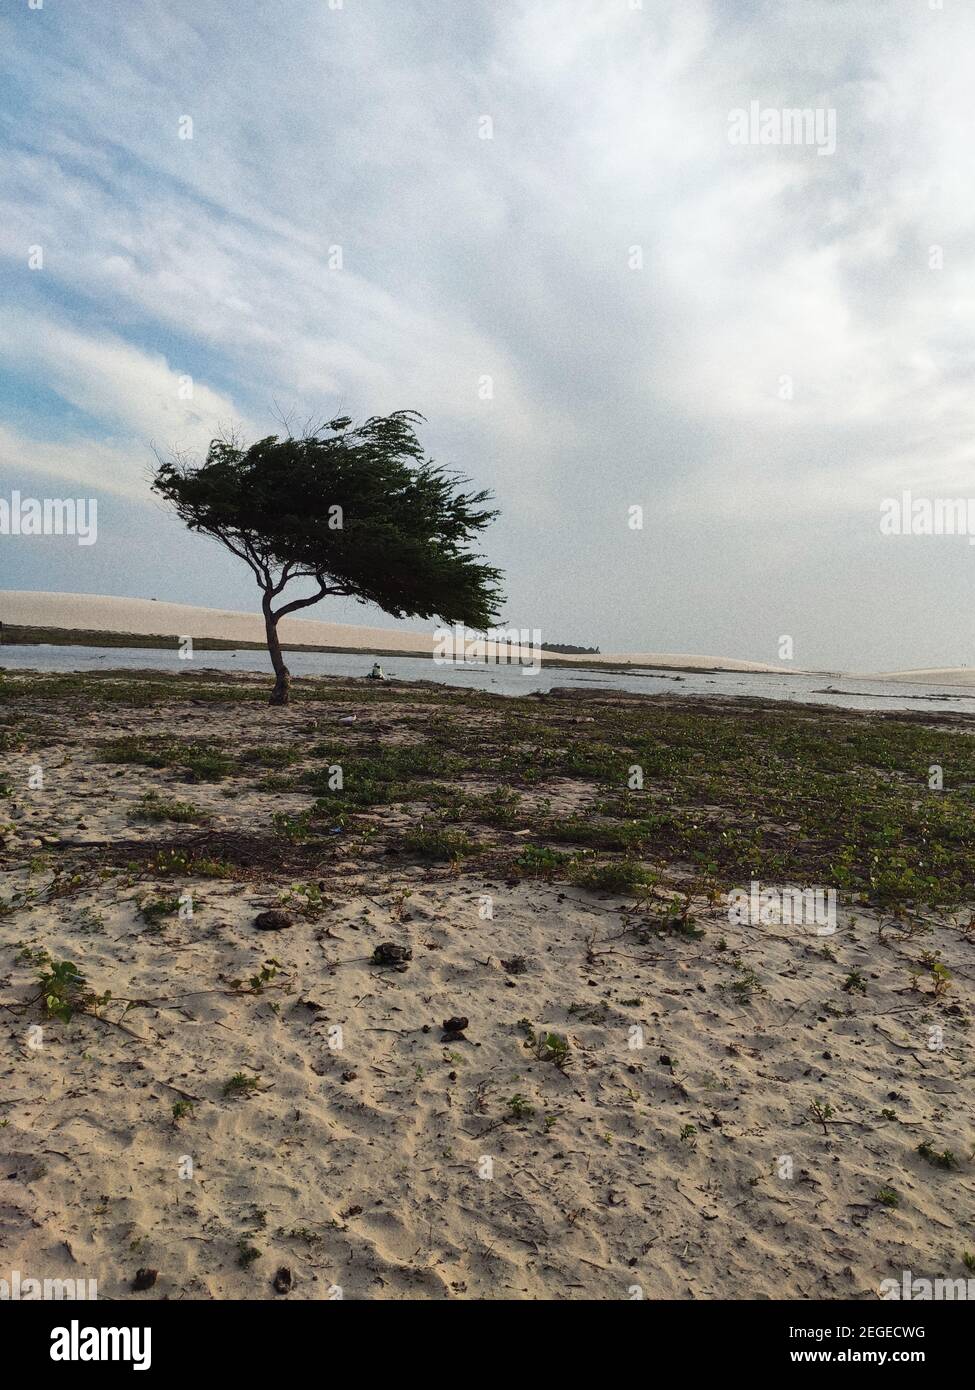 Fotos tomadas en Jericoacora - BRASIL, donde se encuentran estas maravillas, costas, playas y árboles que hacen su propia poesía. Foto de stock